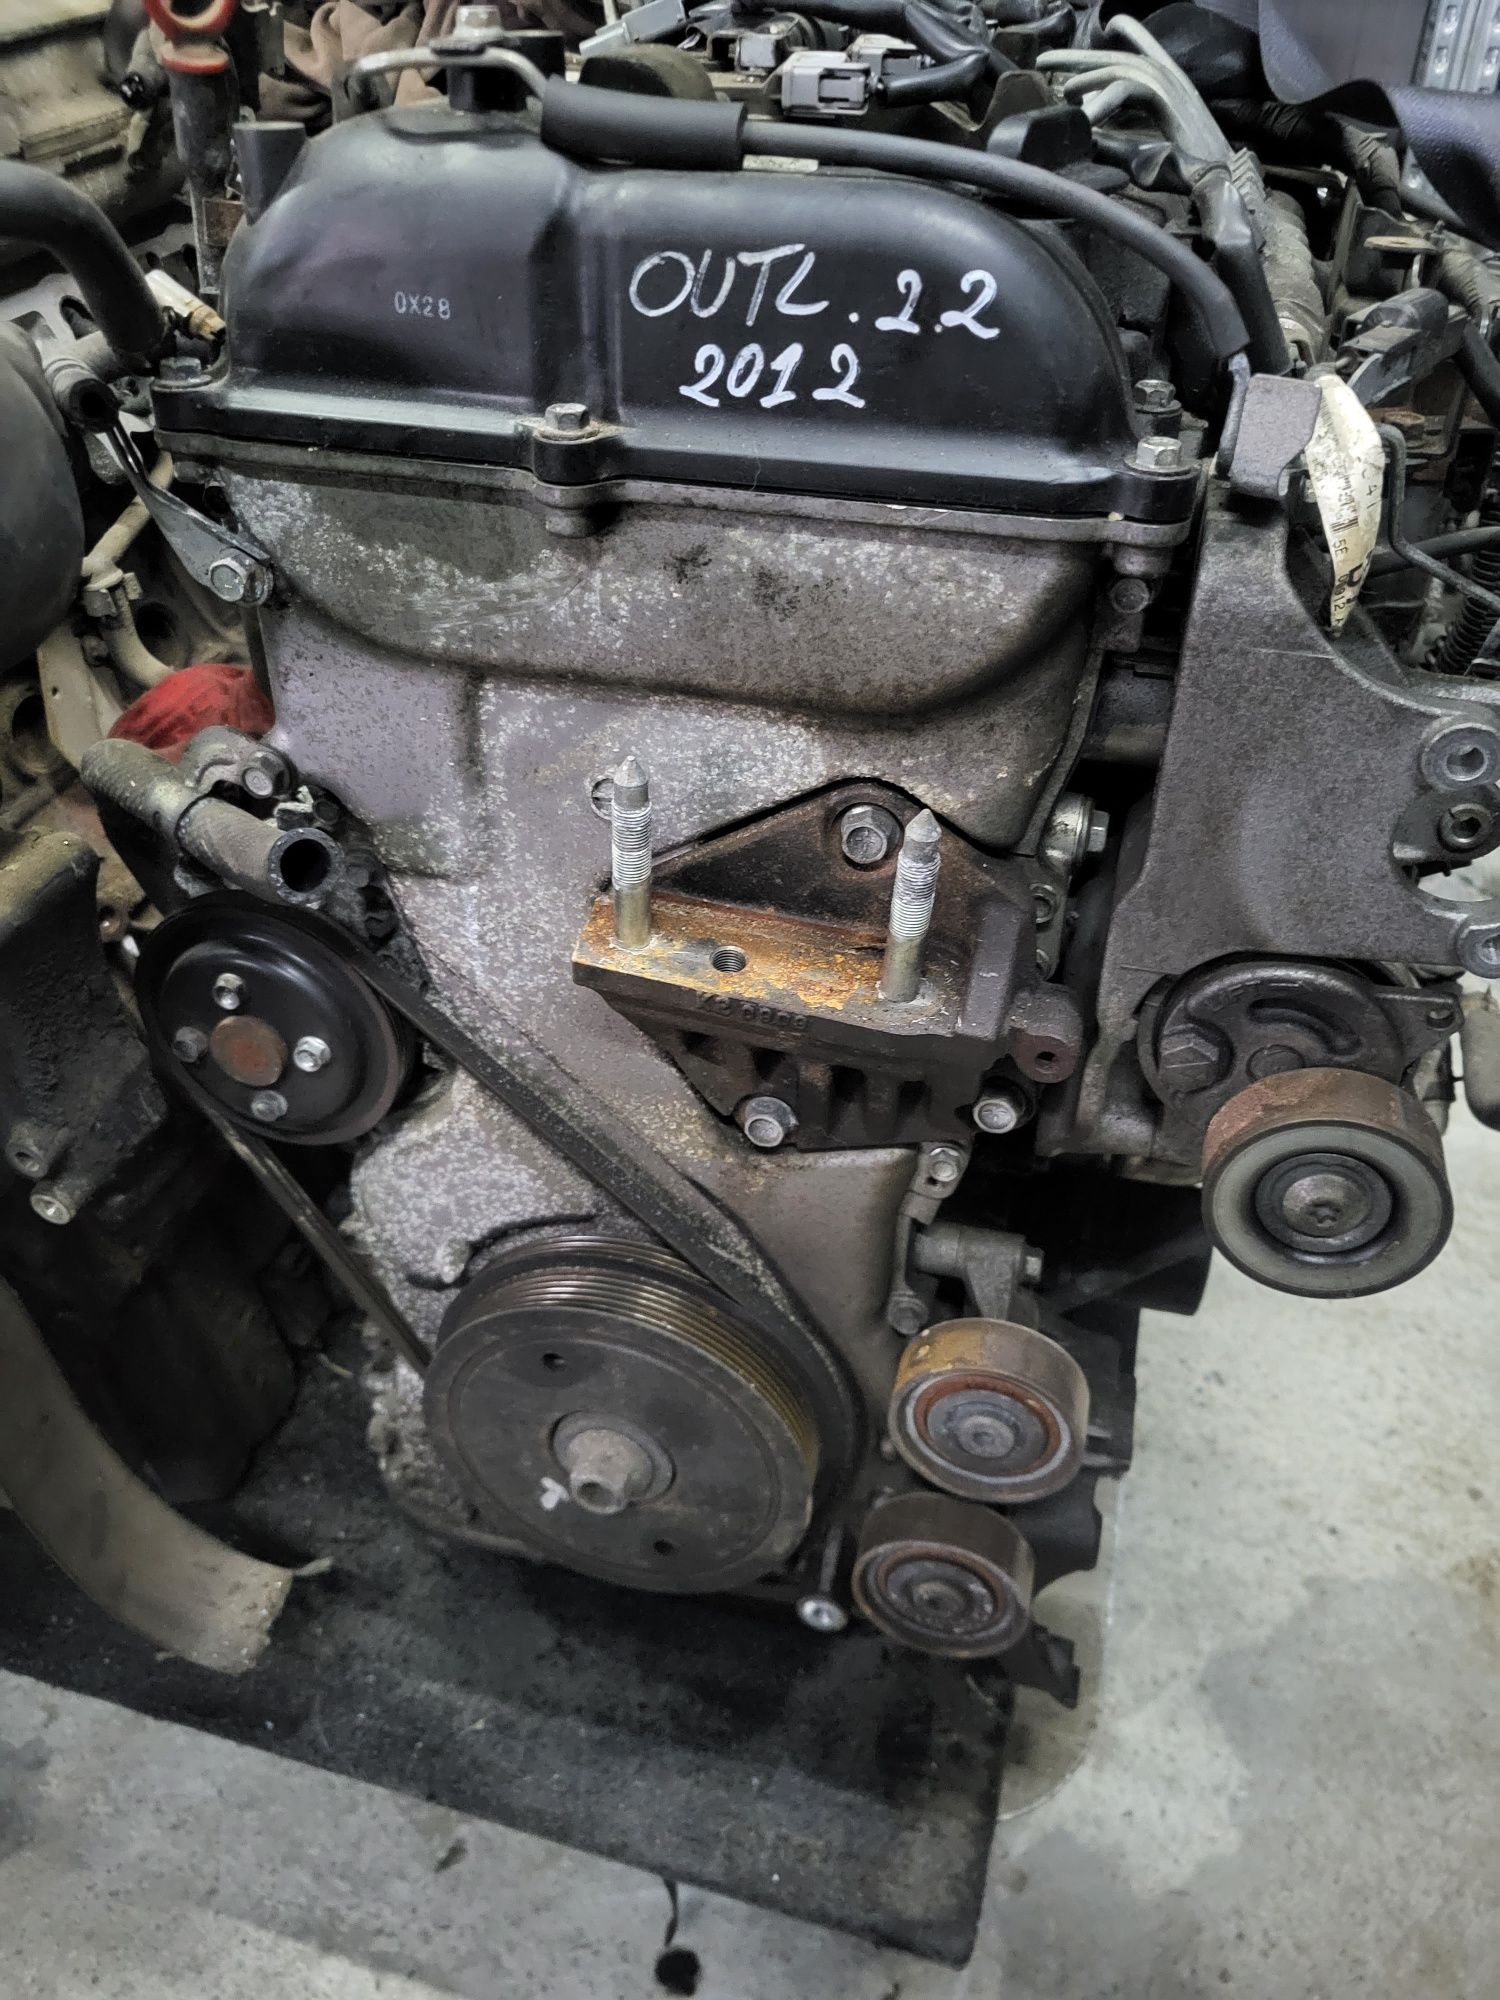 Motor Mitsubishi OUTLANDER 2012 2.2 Diesel Cod motor 4N14-0-10L 177CP